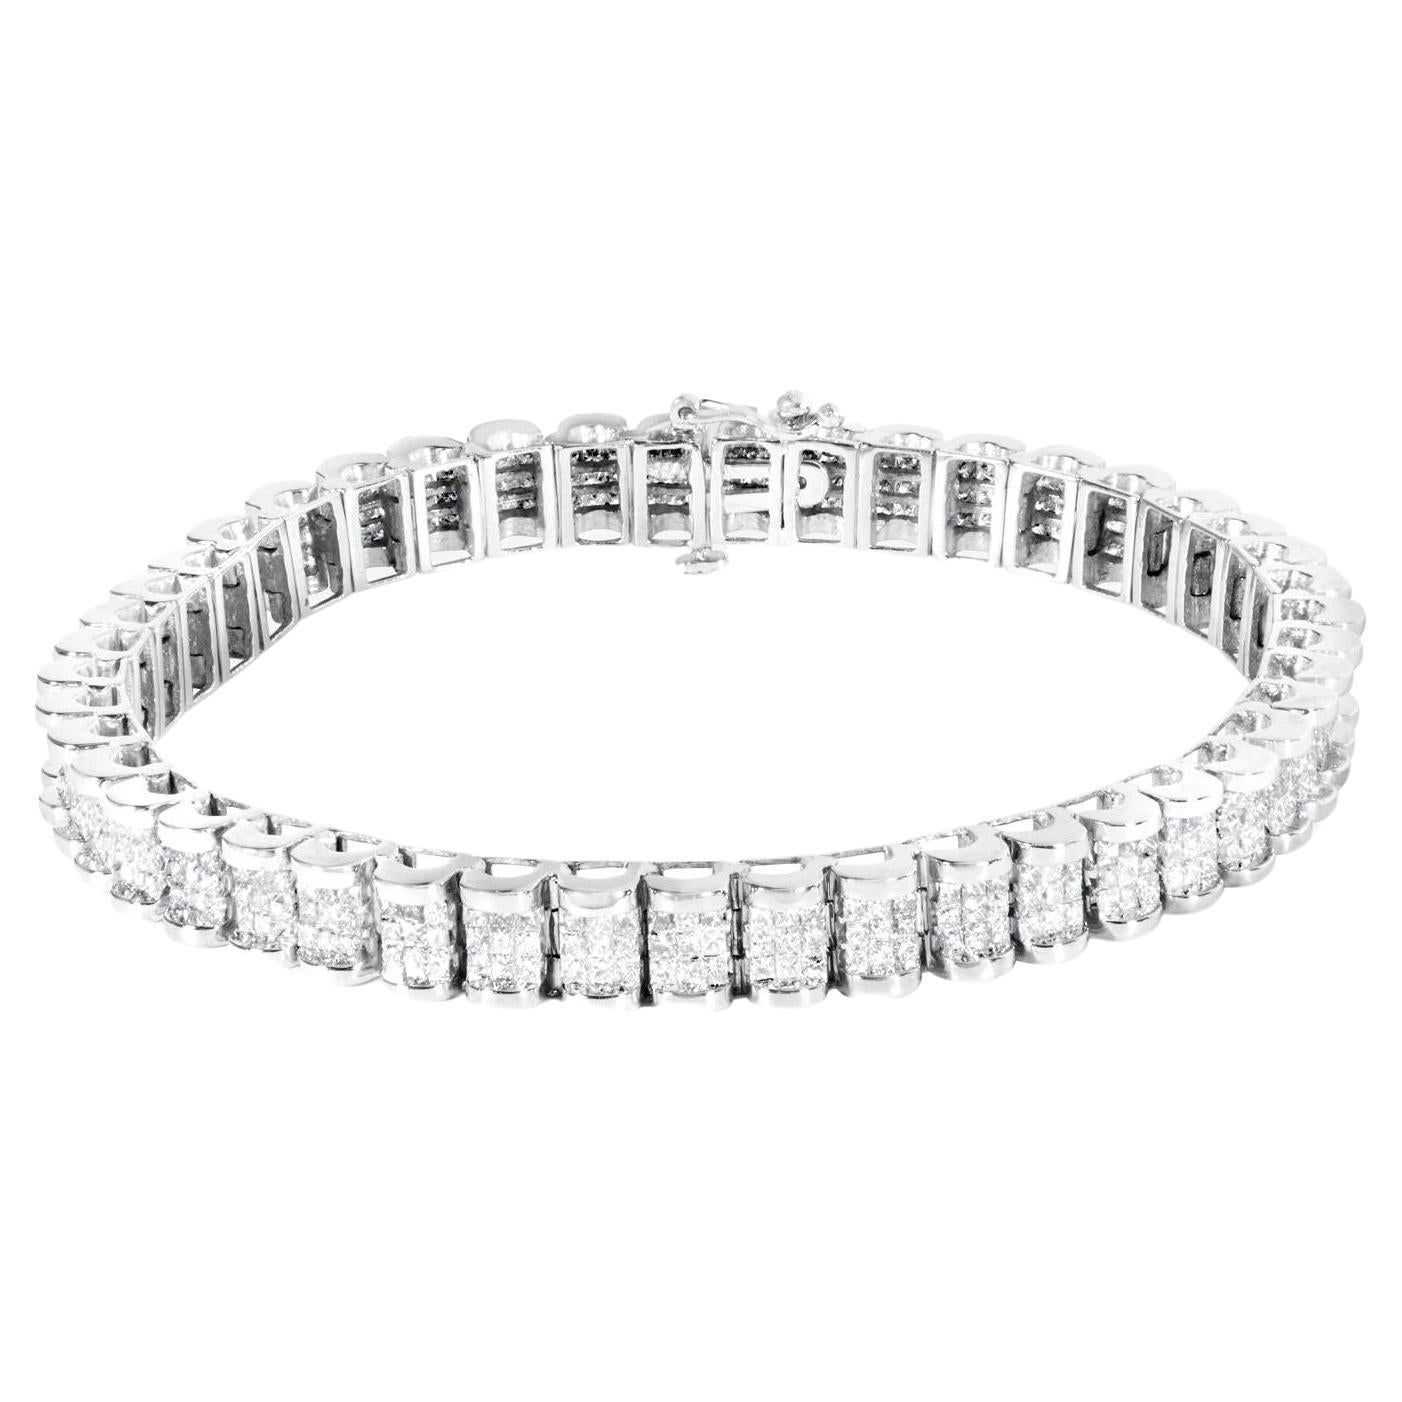 Bracelet de tennis serti de diamants taille princesse 5 carats or blanc 14K